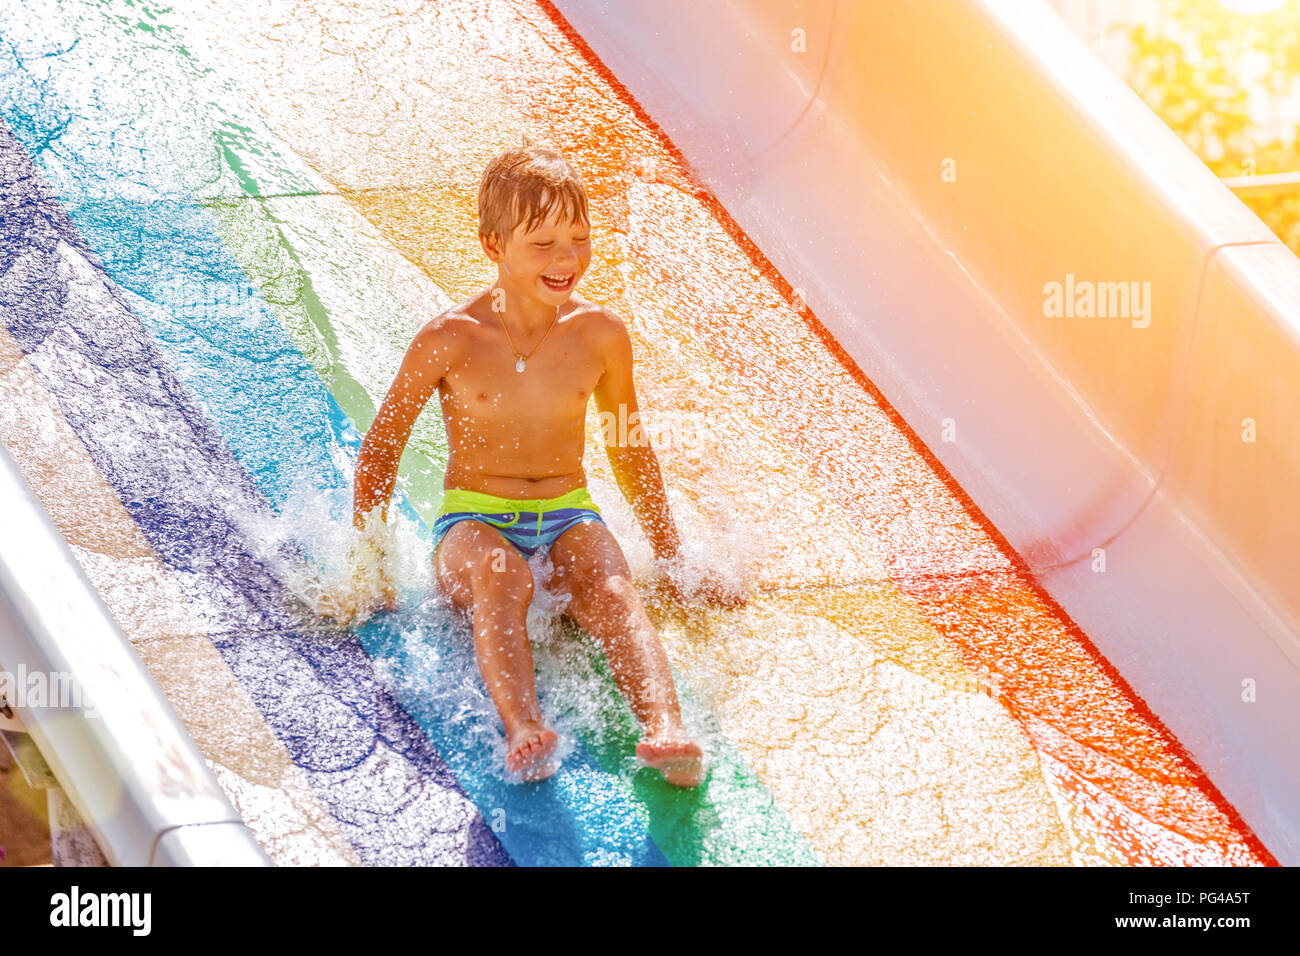 Eine glückliche junge auf Wasserrutsche in einem Schwimmbad Spaß im Sommer Urlaub in einer schönen Aqua Park. Ein Junge nach unten kriechend auf der Wasserrutsche und spritzt. Stockfoto